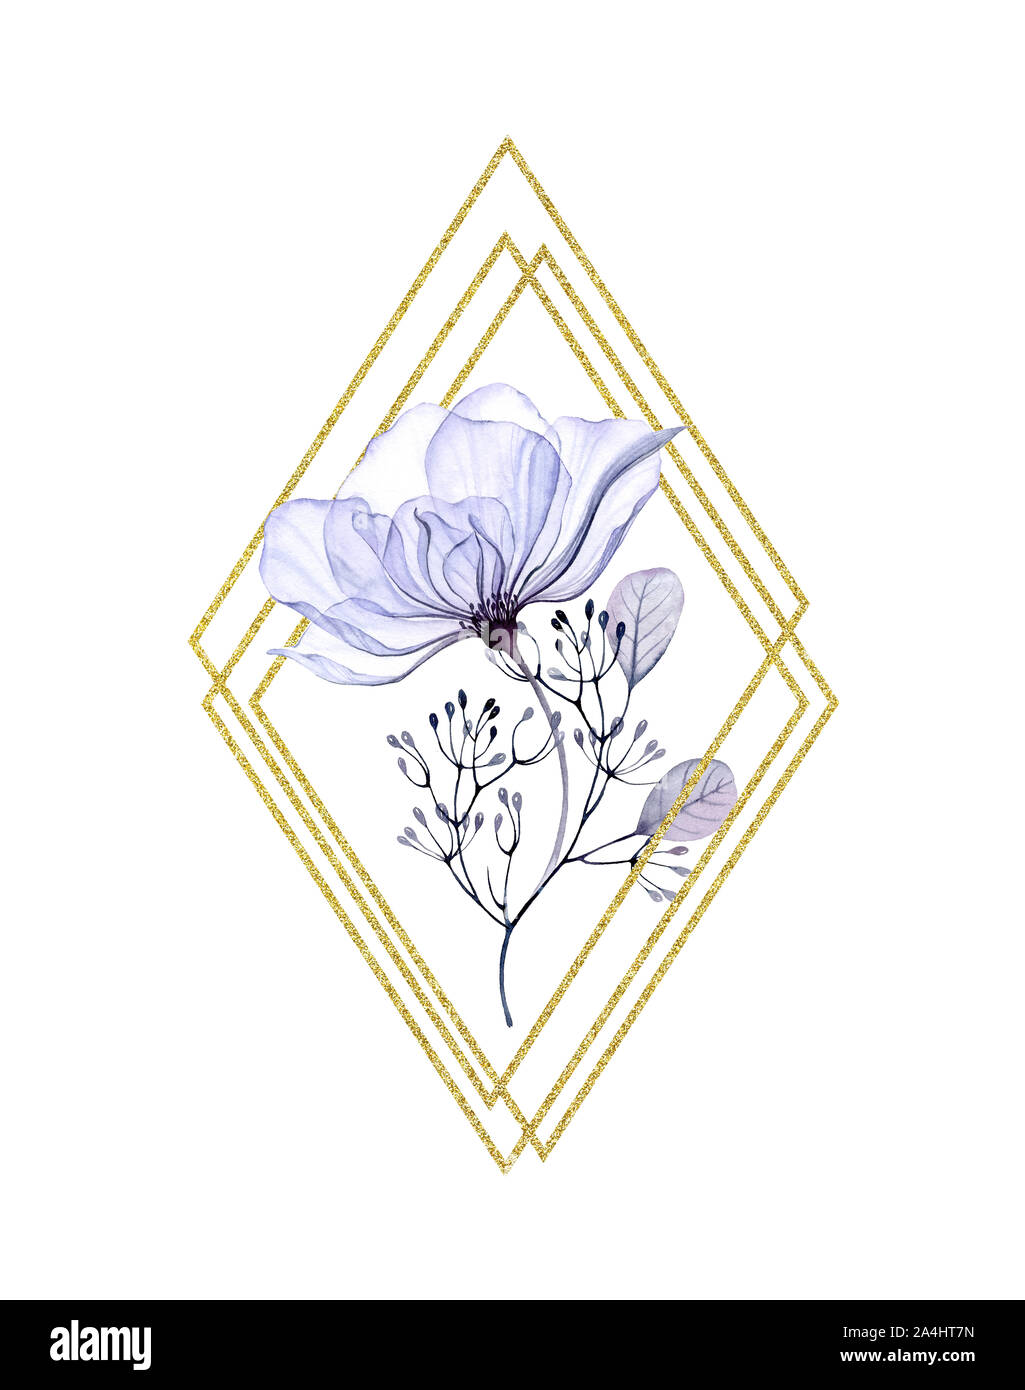 Aquarelle Rose Transparent frame losange avec golden glitter. Arrangement vertical bleu violet avec des fleurs, feuilles et papier aluminium brillant. Floral peint à la main Banque D'Images